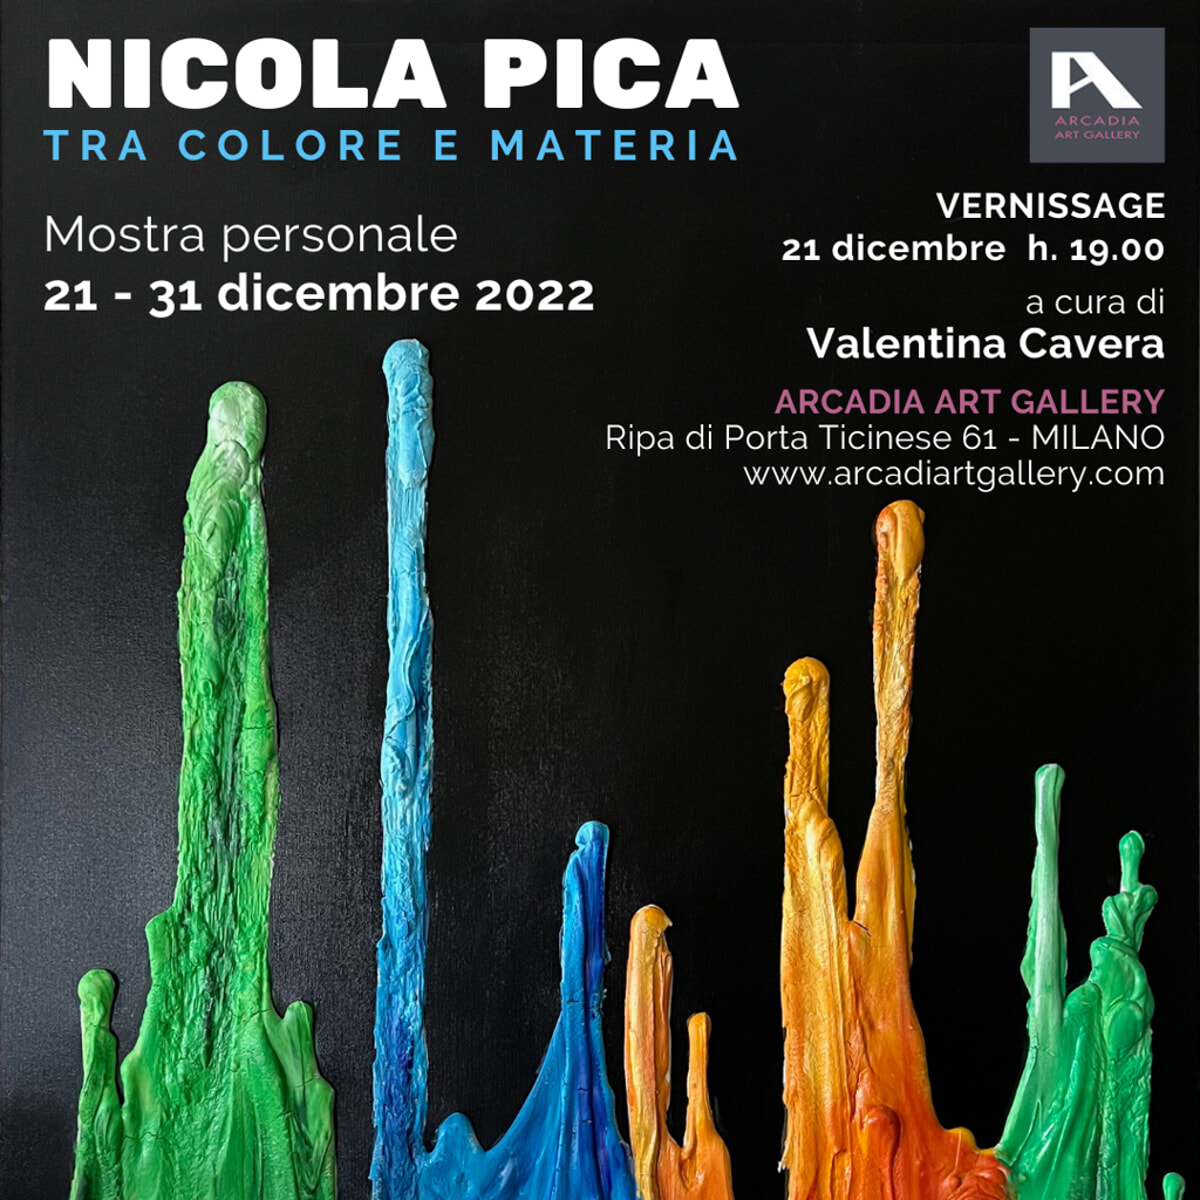 Mostra personale “tra colore e materia” di Nicola Pica